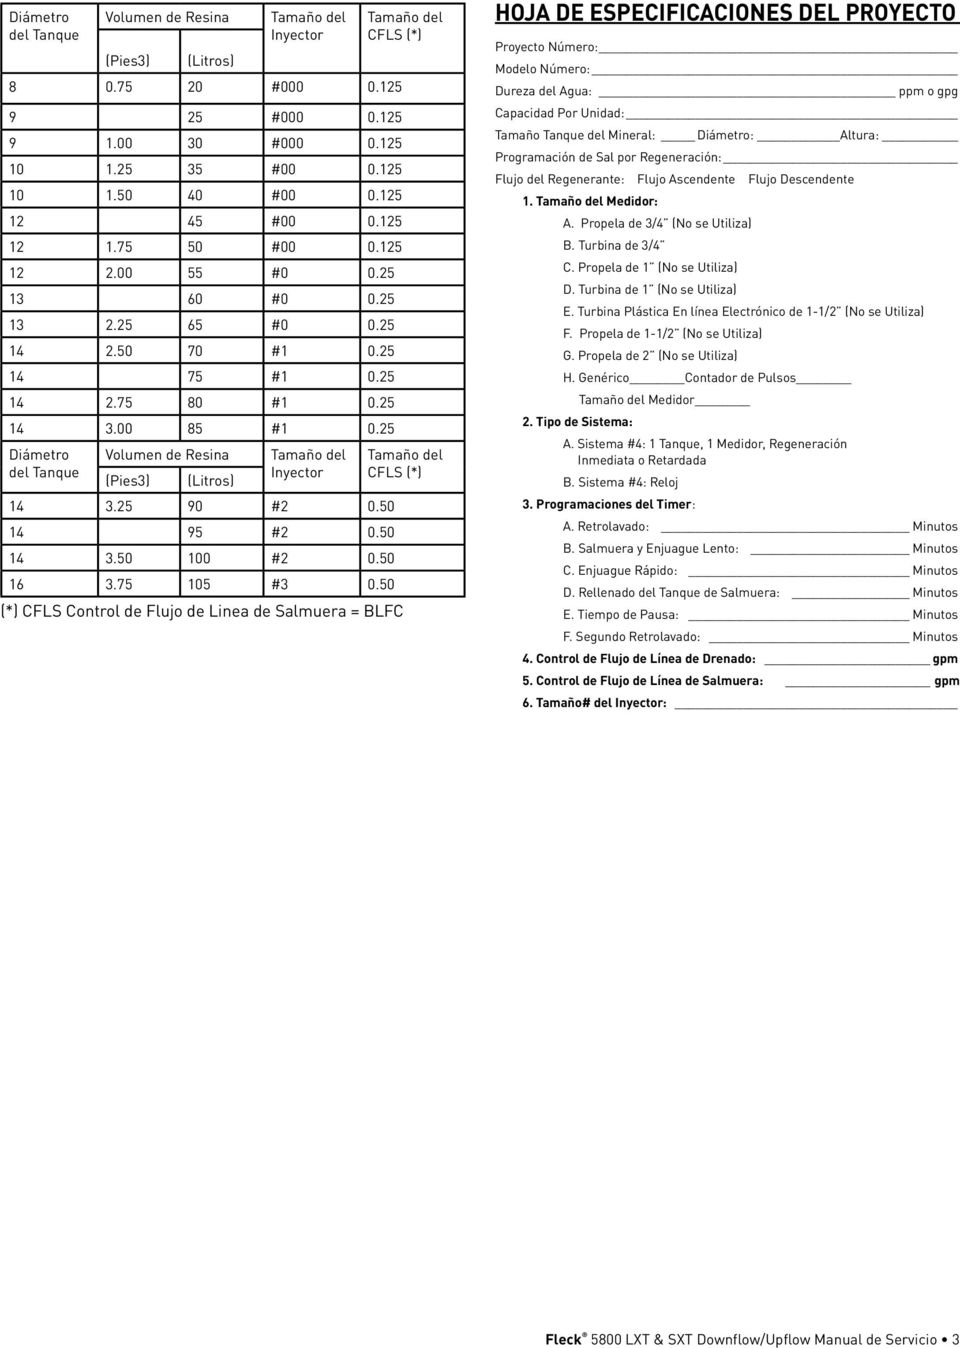 25 Diámetro del Tanque Volumen de Resina (Pies3) (Litros) Tamaño del Inyector 14 3.25 90 #2 0.50 14 95 #2 0.50 14 3.50 100 #2 0.50 Tamaño del CFLS (*) Tamaño del CFLS (*) 16 3.75 105 #3 0.